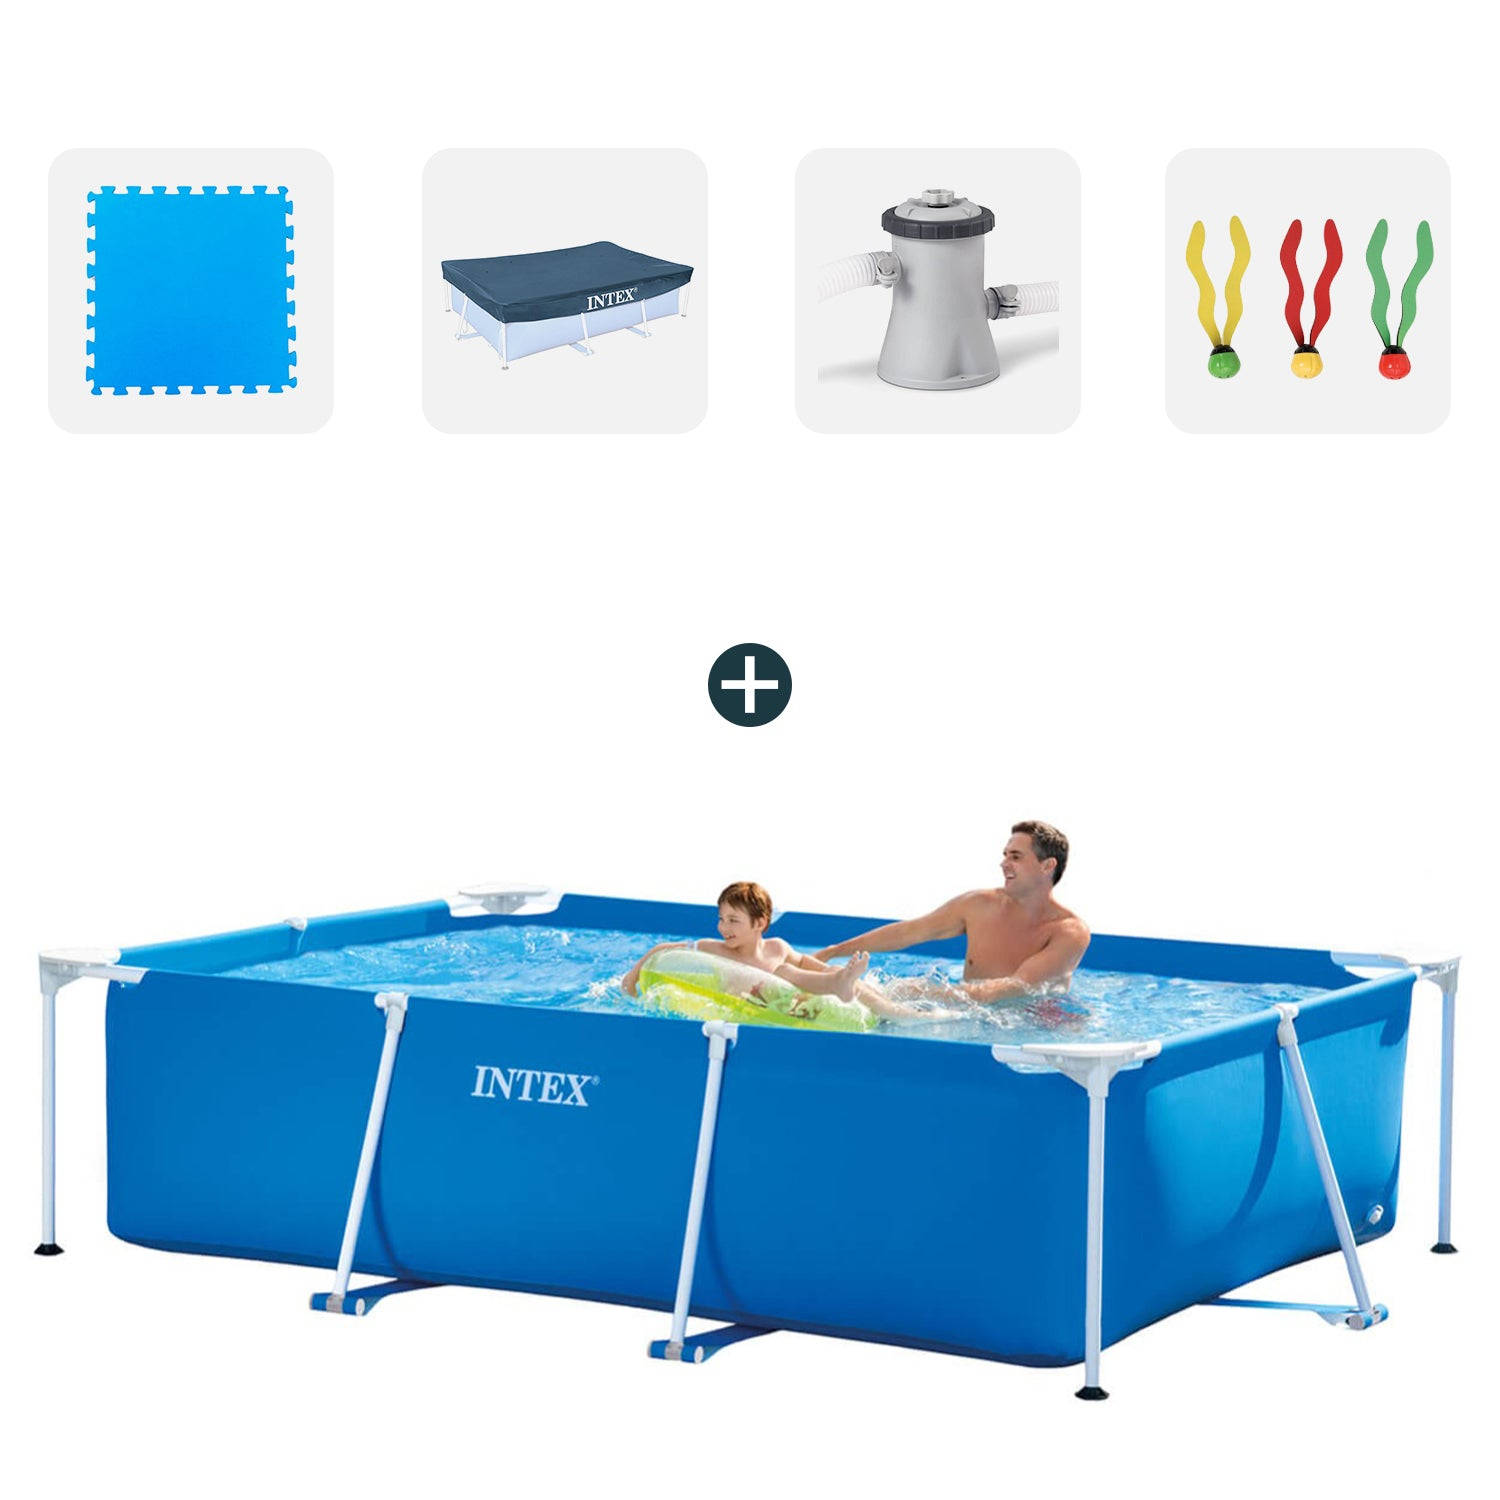 Intex zwembad - Complete set - 260x160x65 cm - Inclusief zwembadtegels - Afdekzeil - Filterpomp - Duikspeelgoed